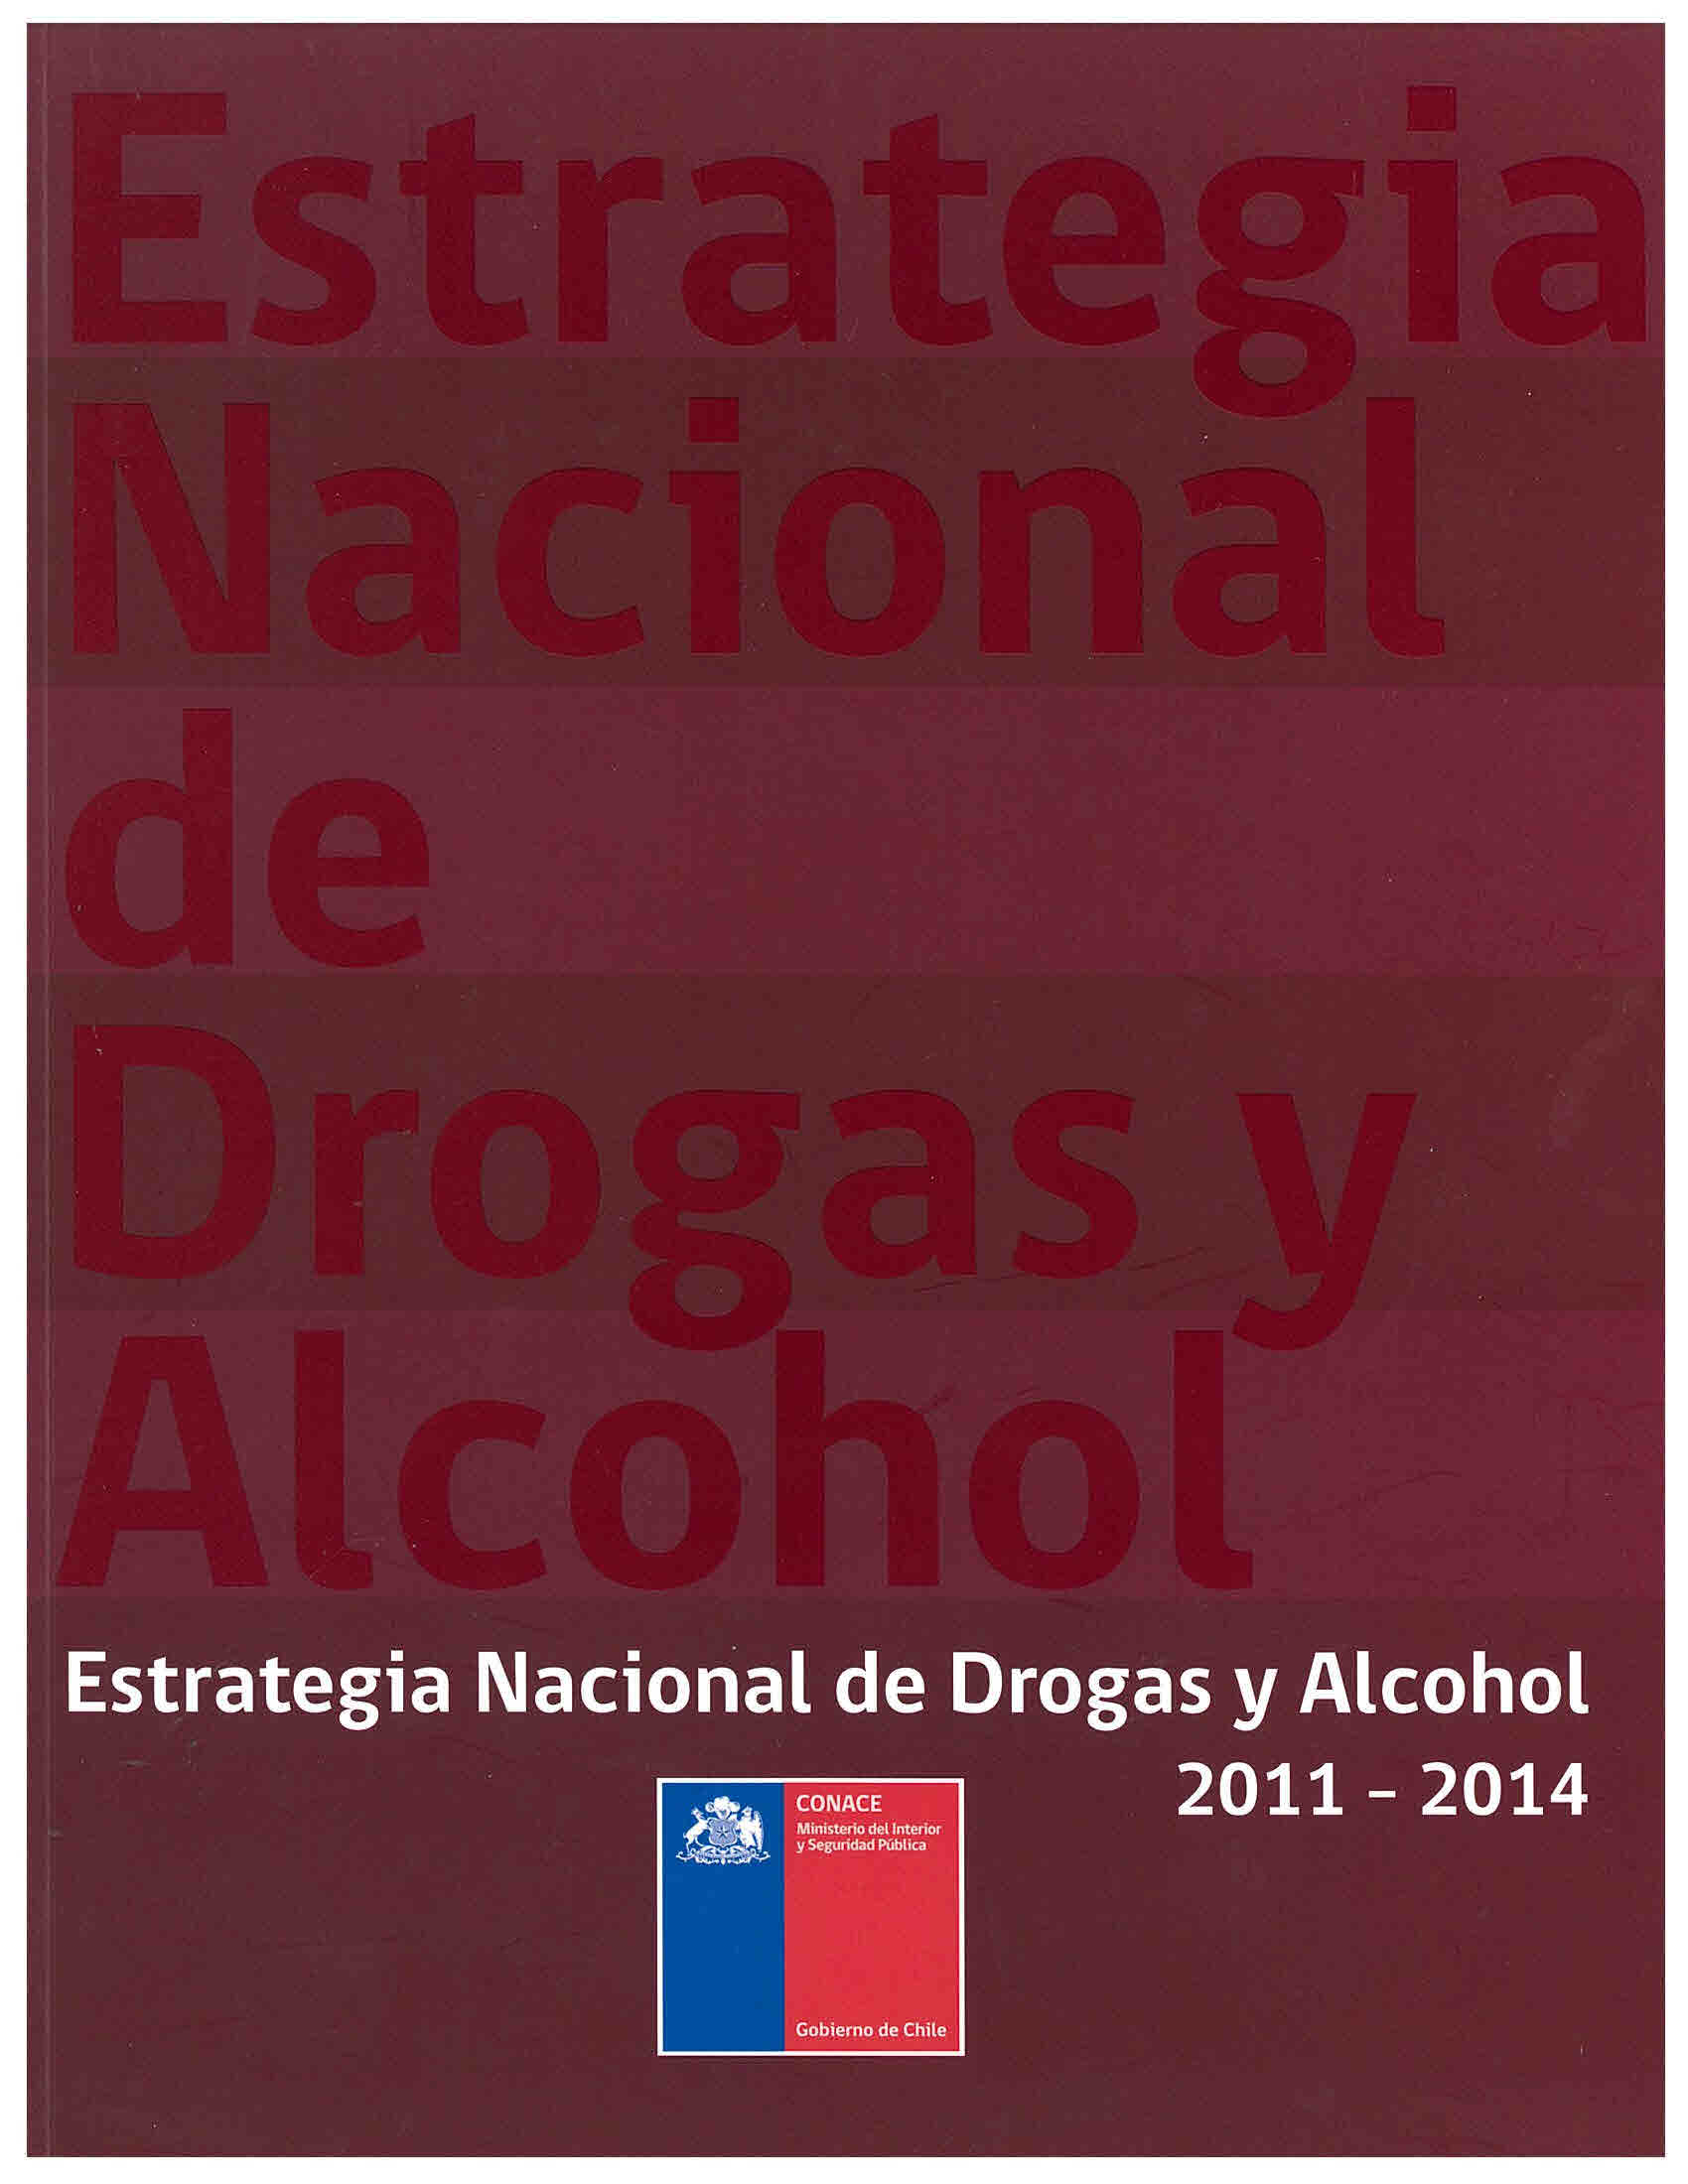 Estrategia nacional de drogas y alcohol 2011-2014